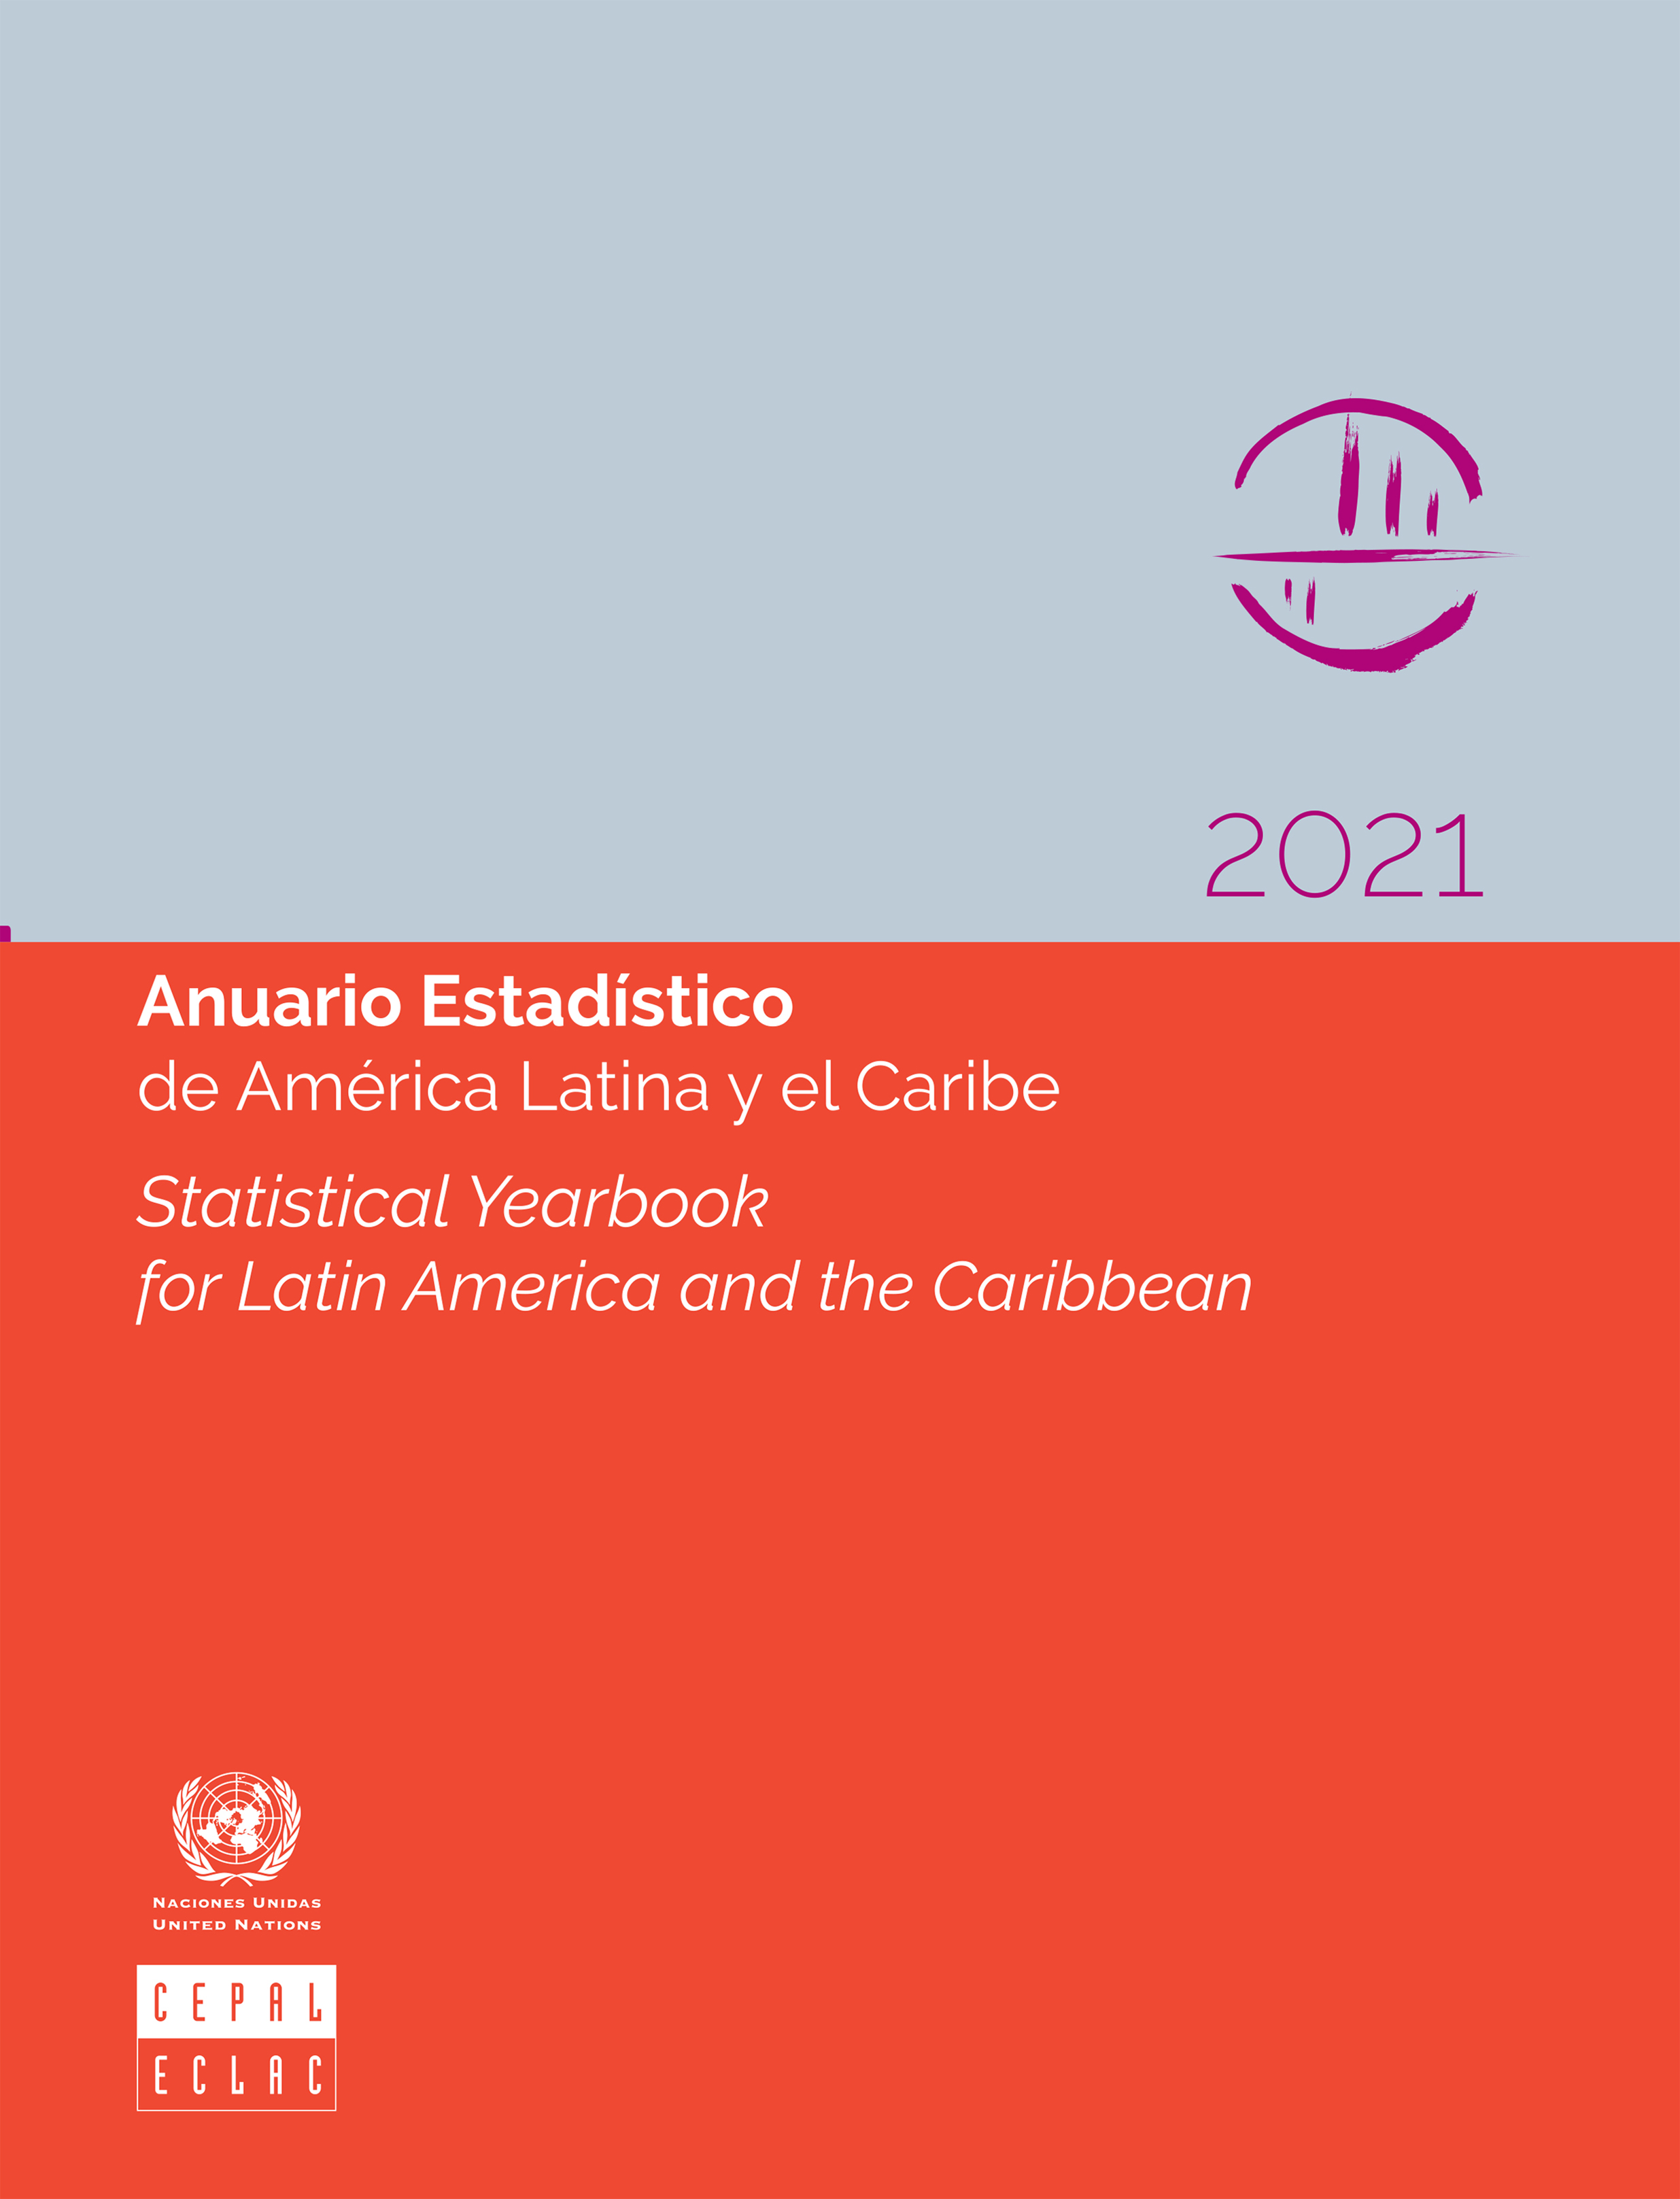 image of Anuario Estadístico de América Latina y el Caribe 2021